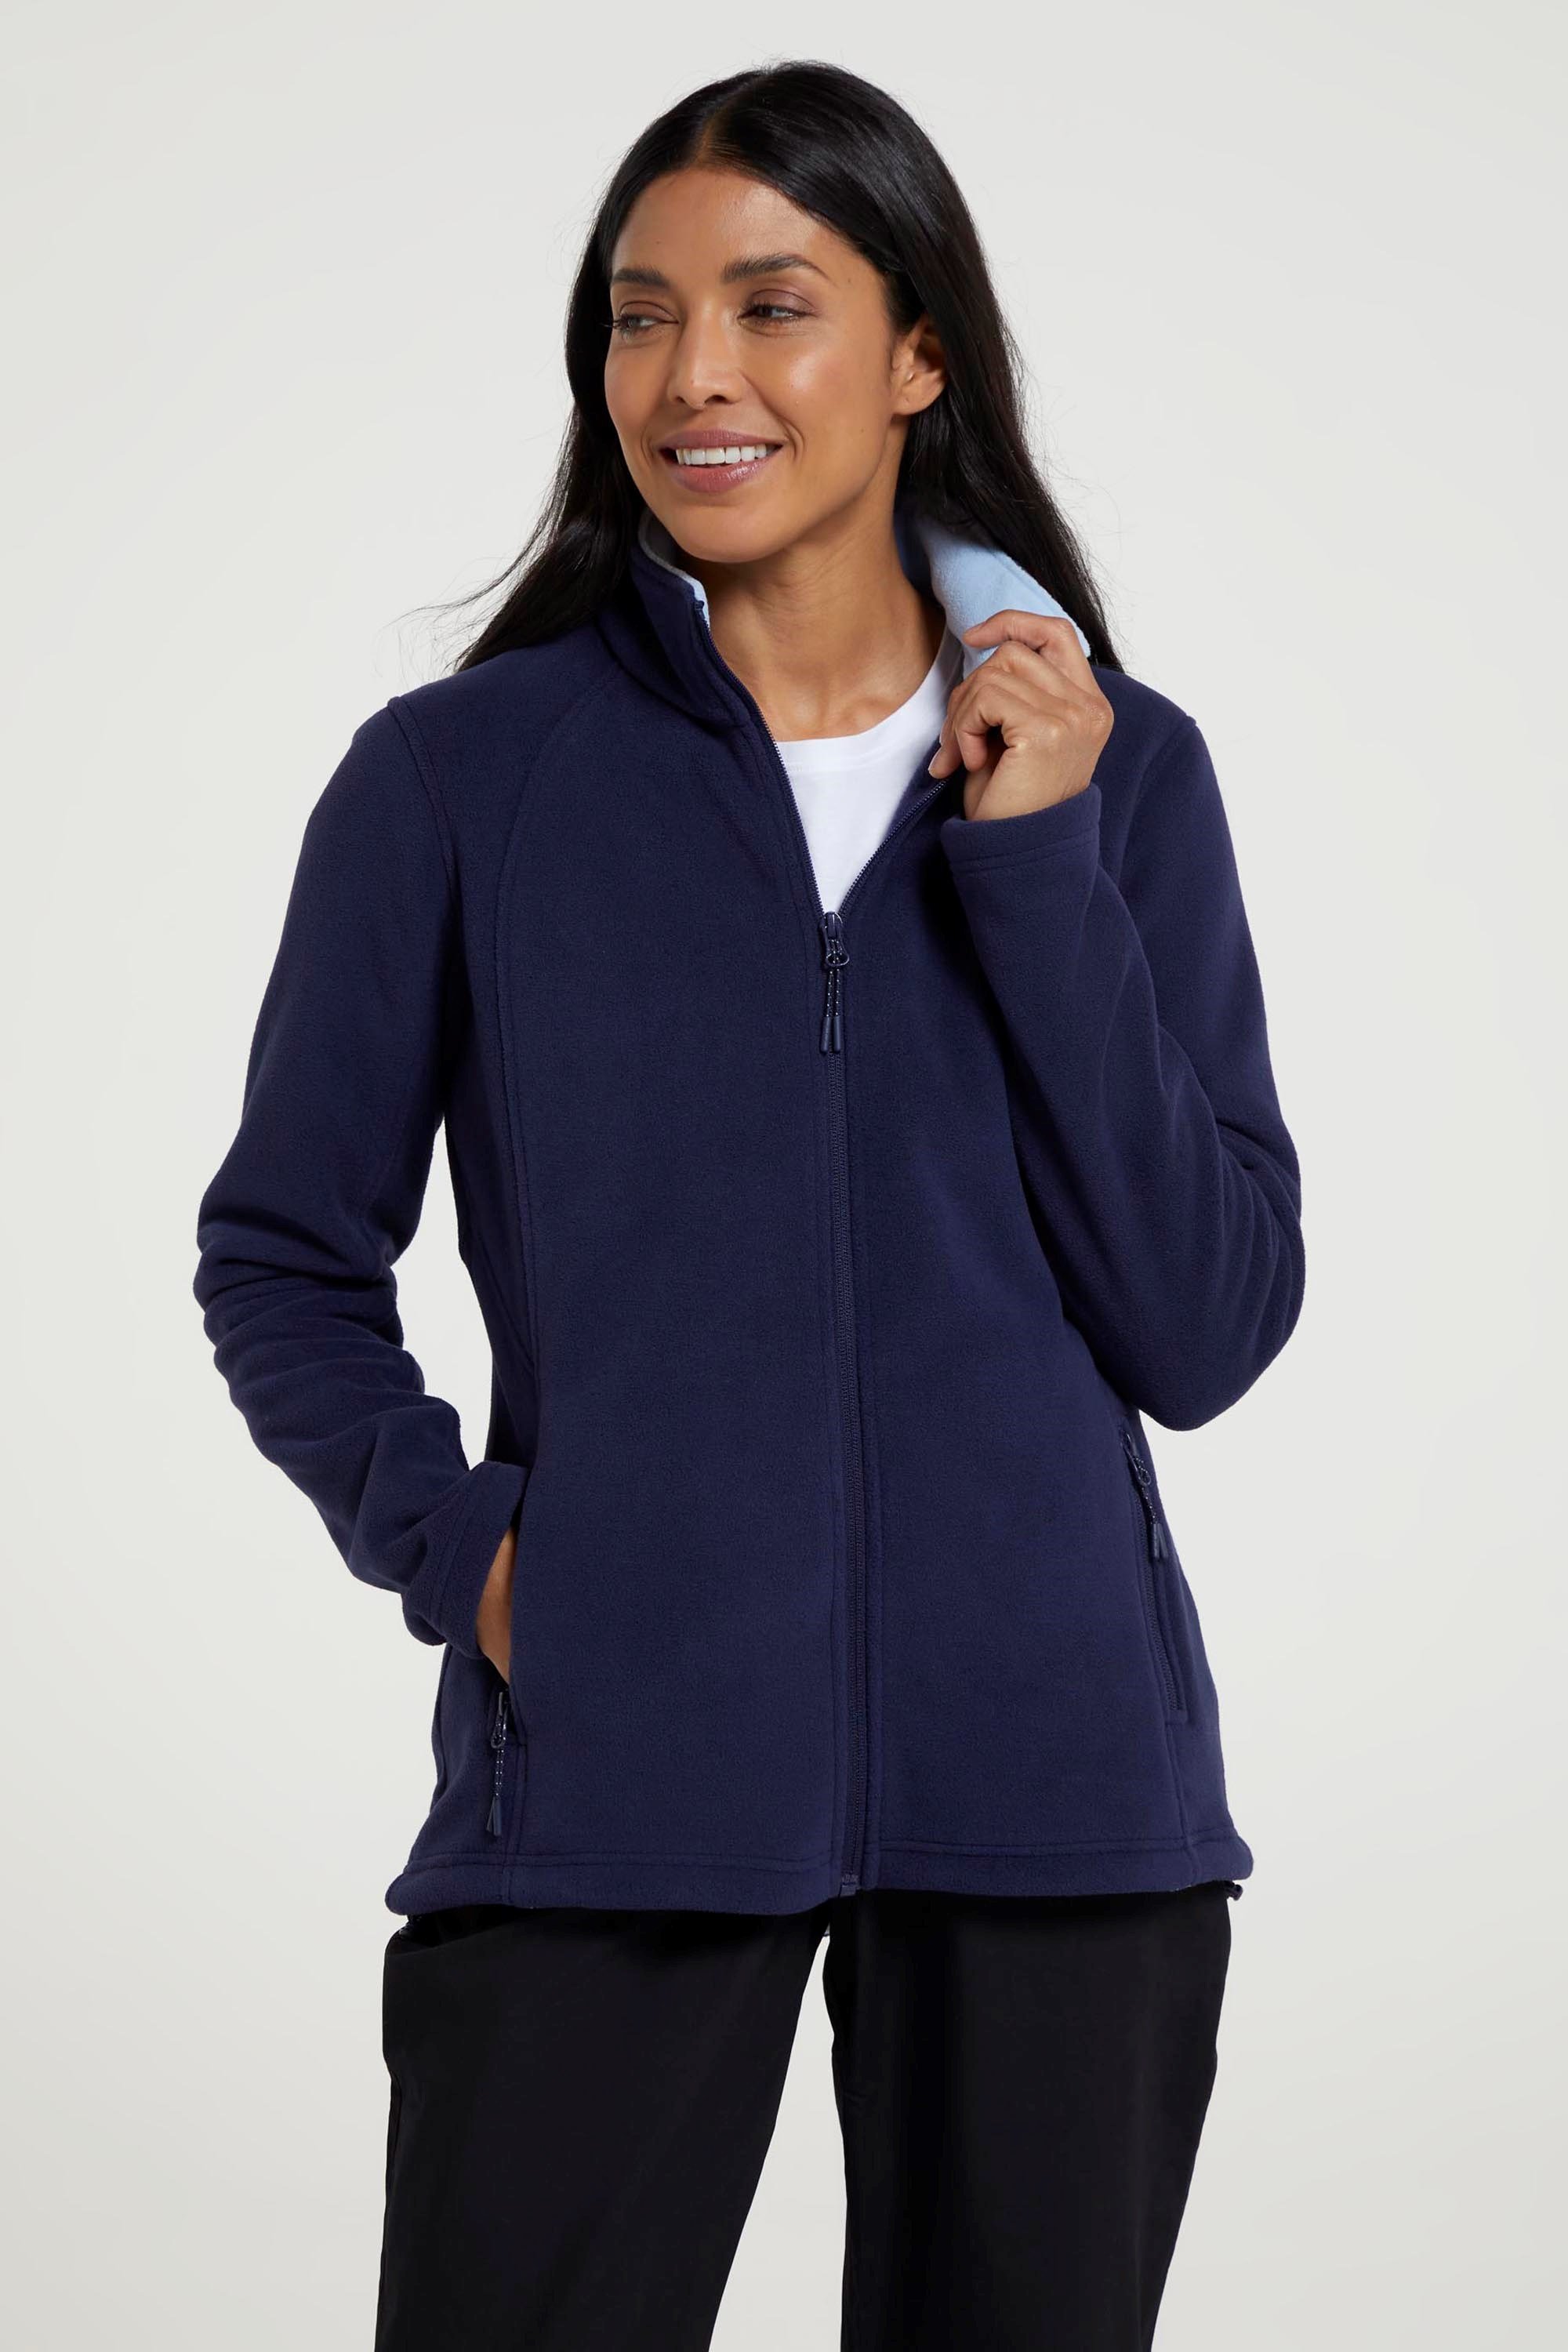 Sky Womens Full-Zip Fleece Jacket Navy